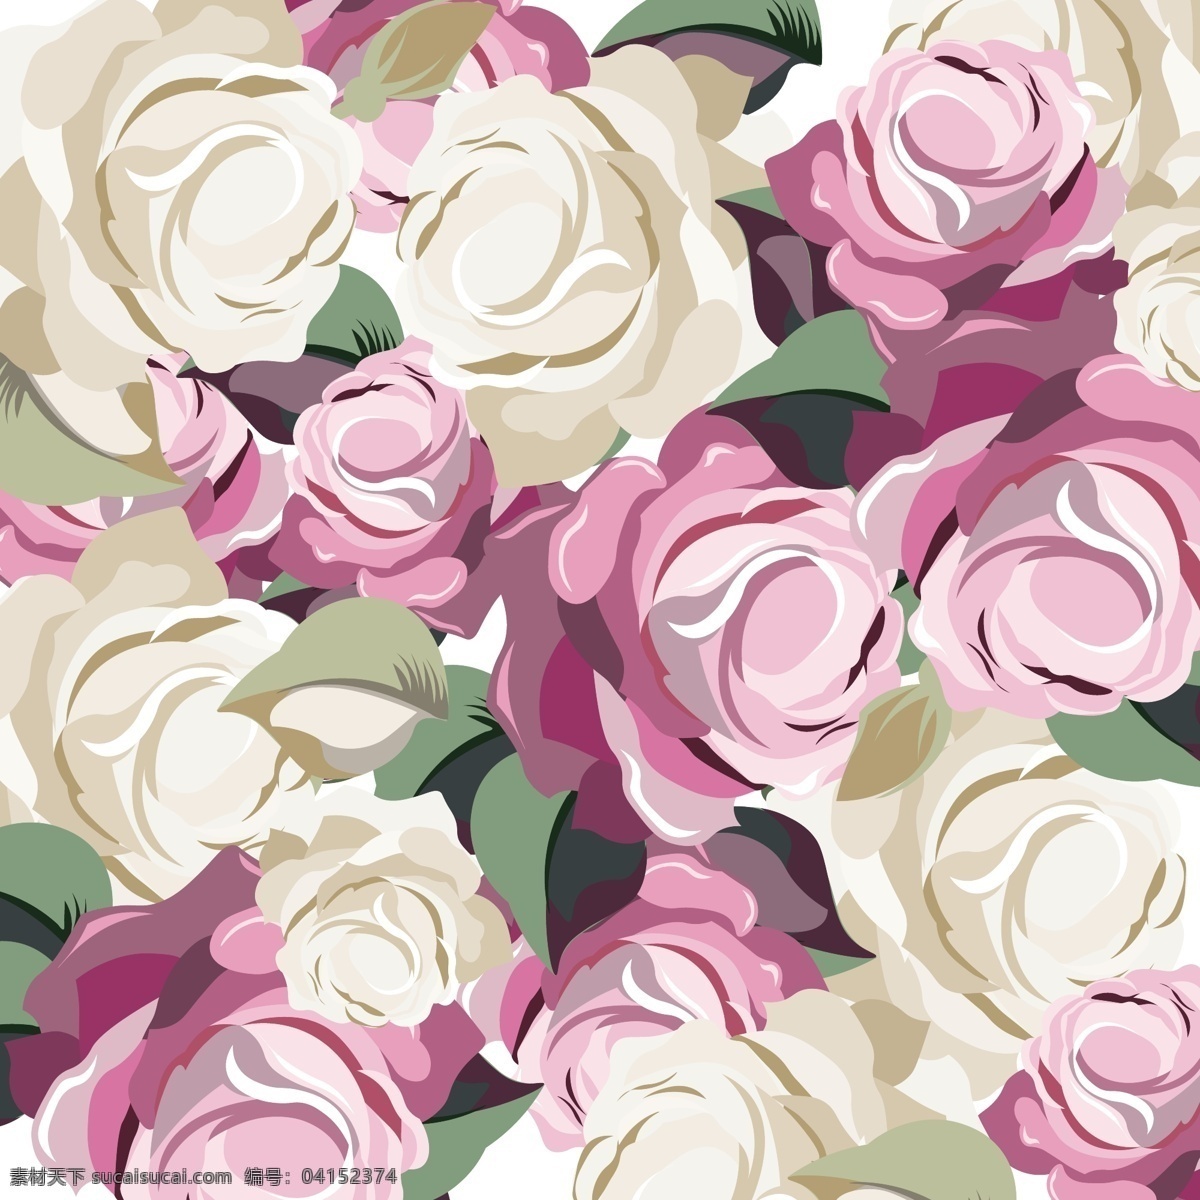 精美 彩色 玫瑰 图案 背景 矢量 设计素材 彩色玫瑰 图案背景